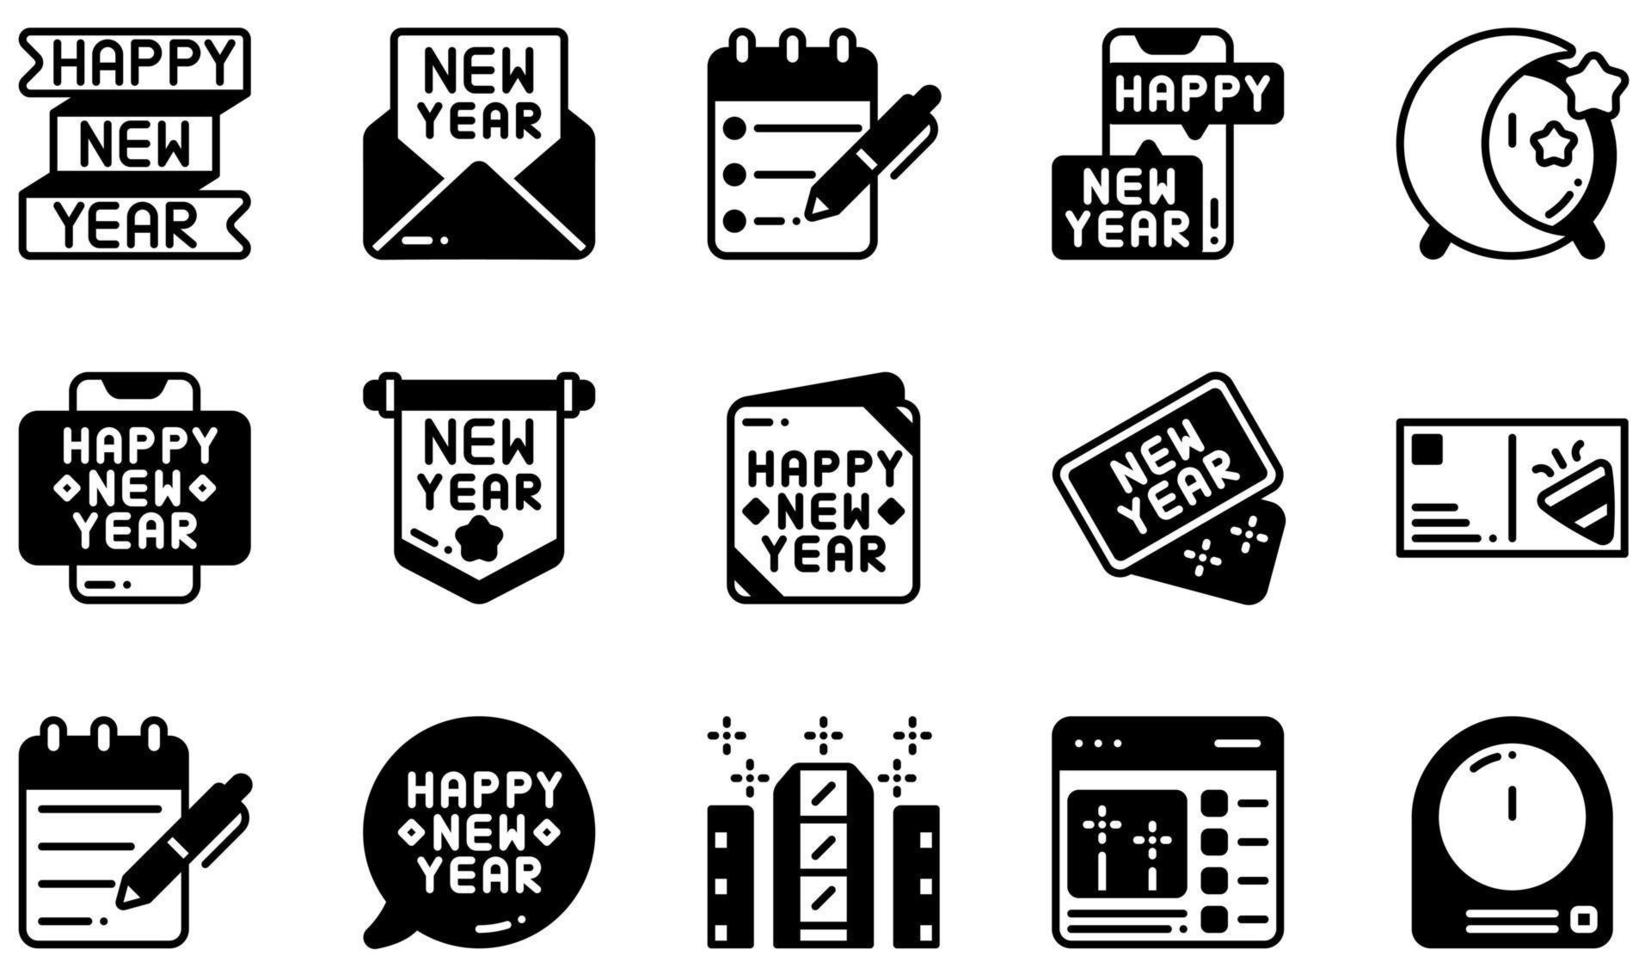 set di icone vettoriali relative al nuovo anno. contiene icone come felice anno nuovo, invito, elenco, nuovo anno, cartolina, Times Square e altro ancora.